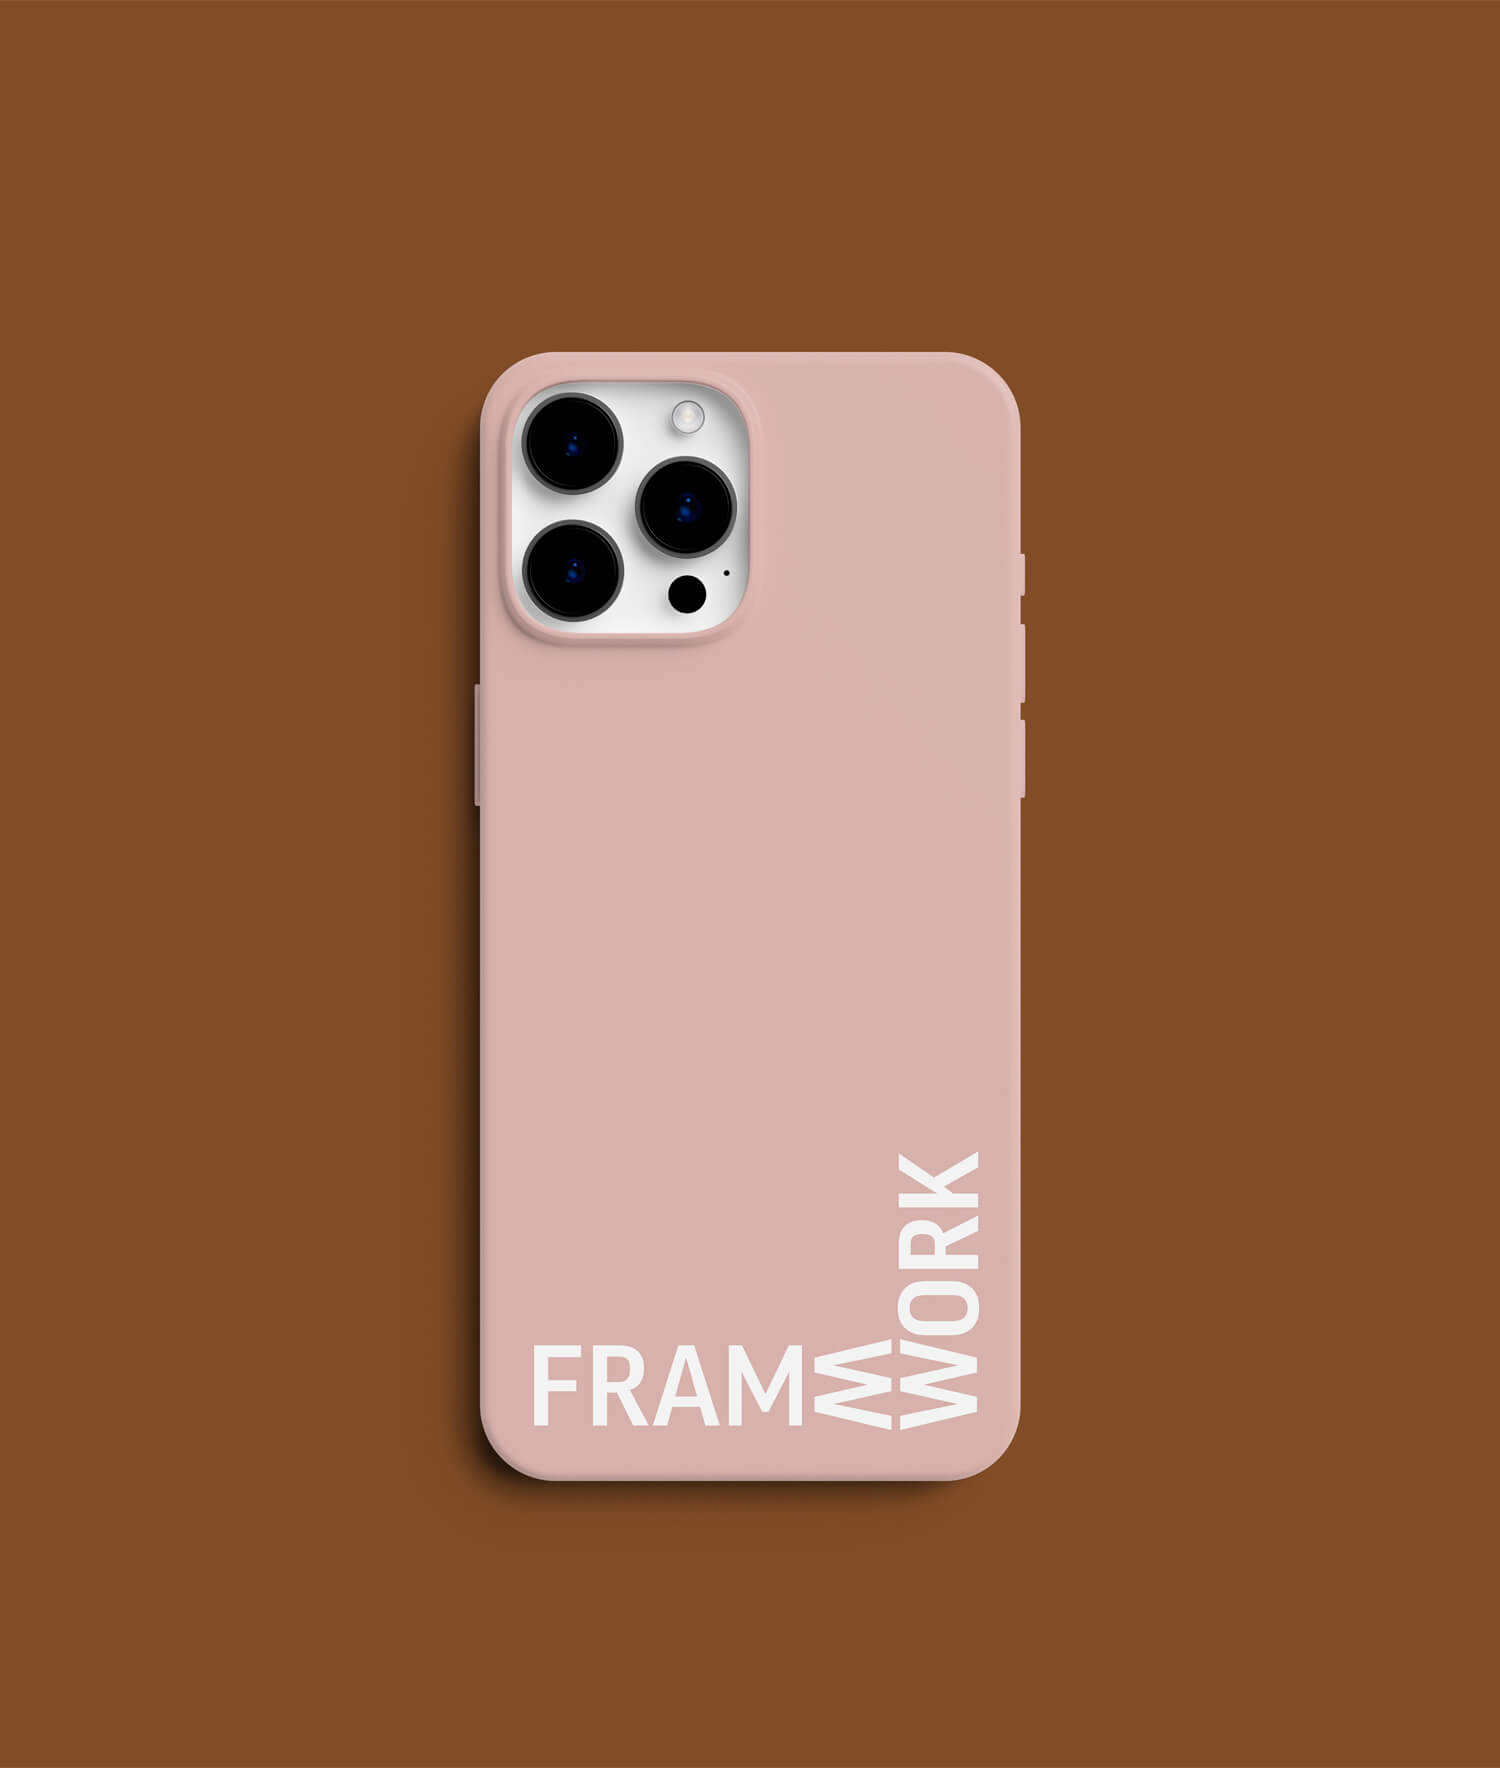 Framework branded mobile phone case